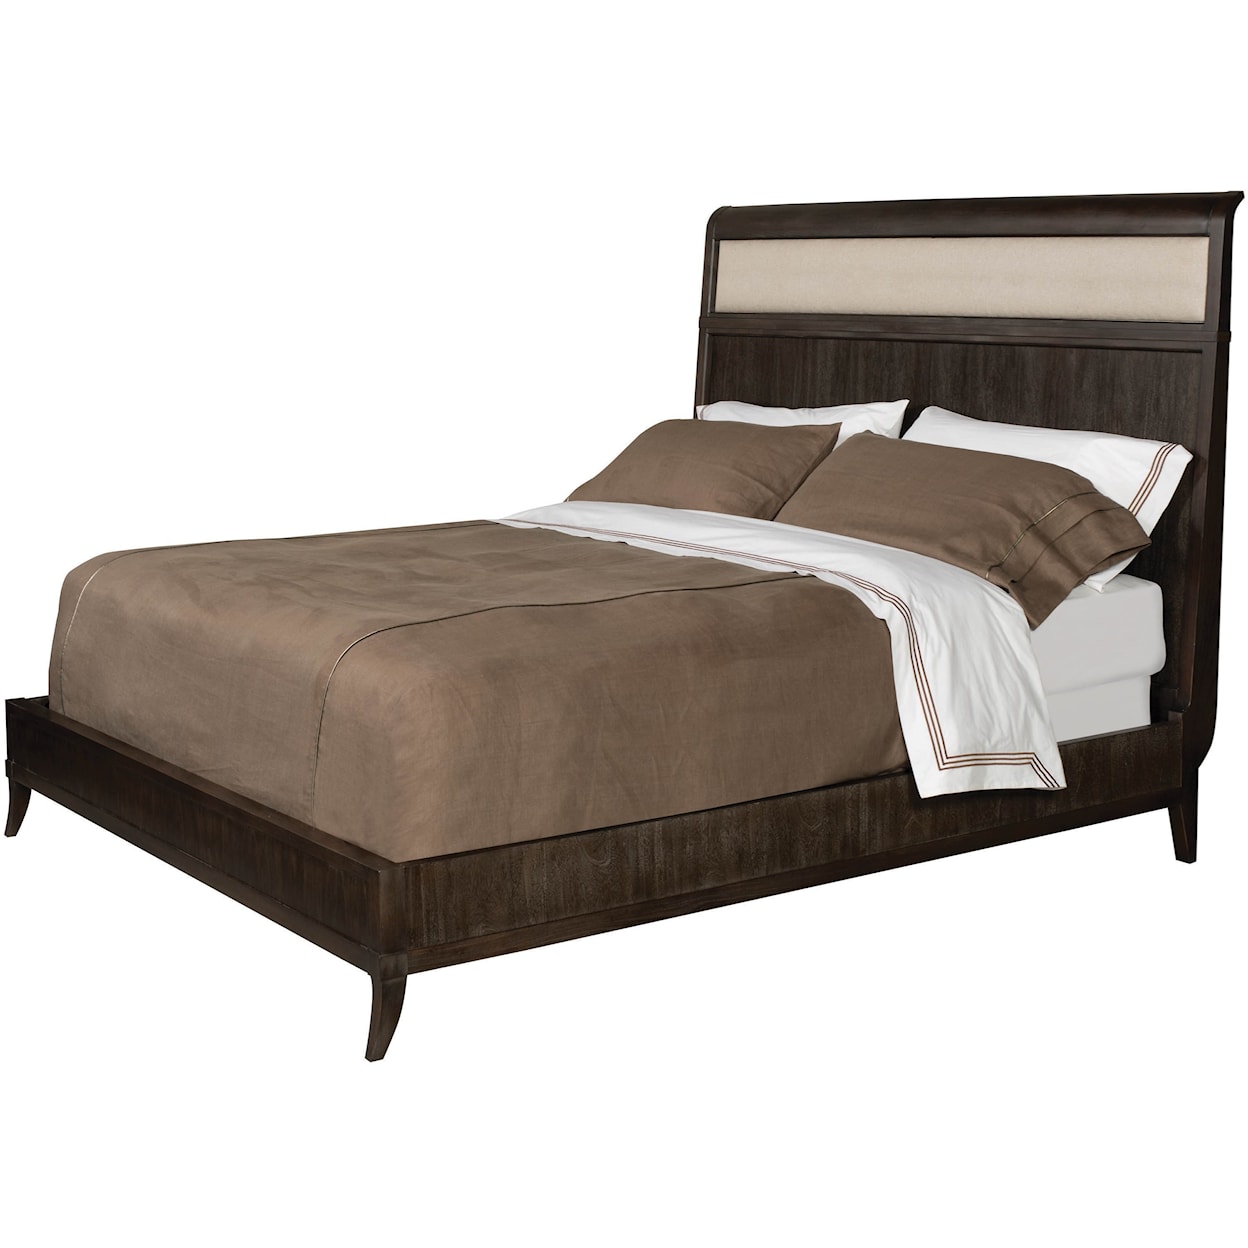 Vanguard Furniture Compendium Arista King Bed